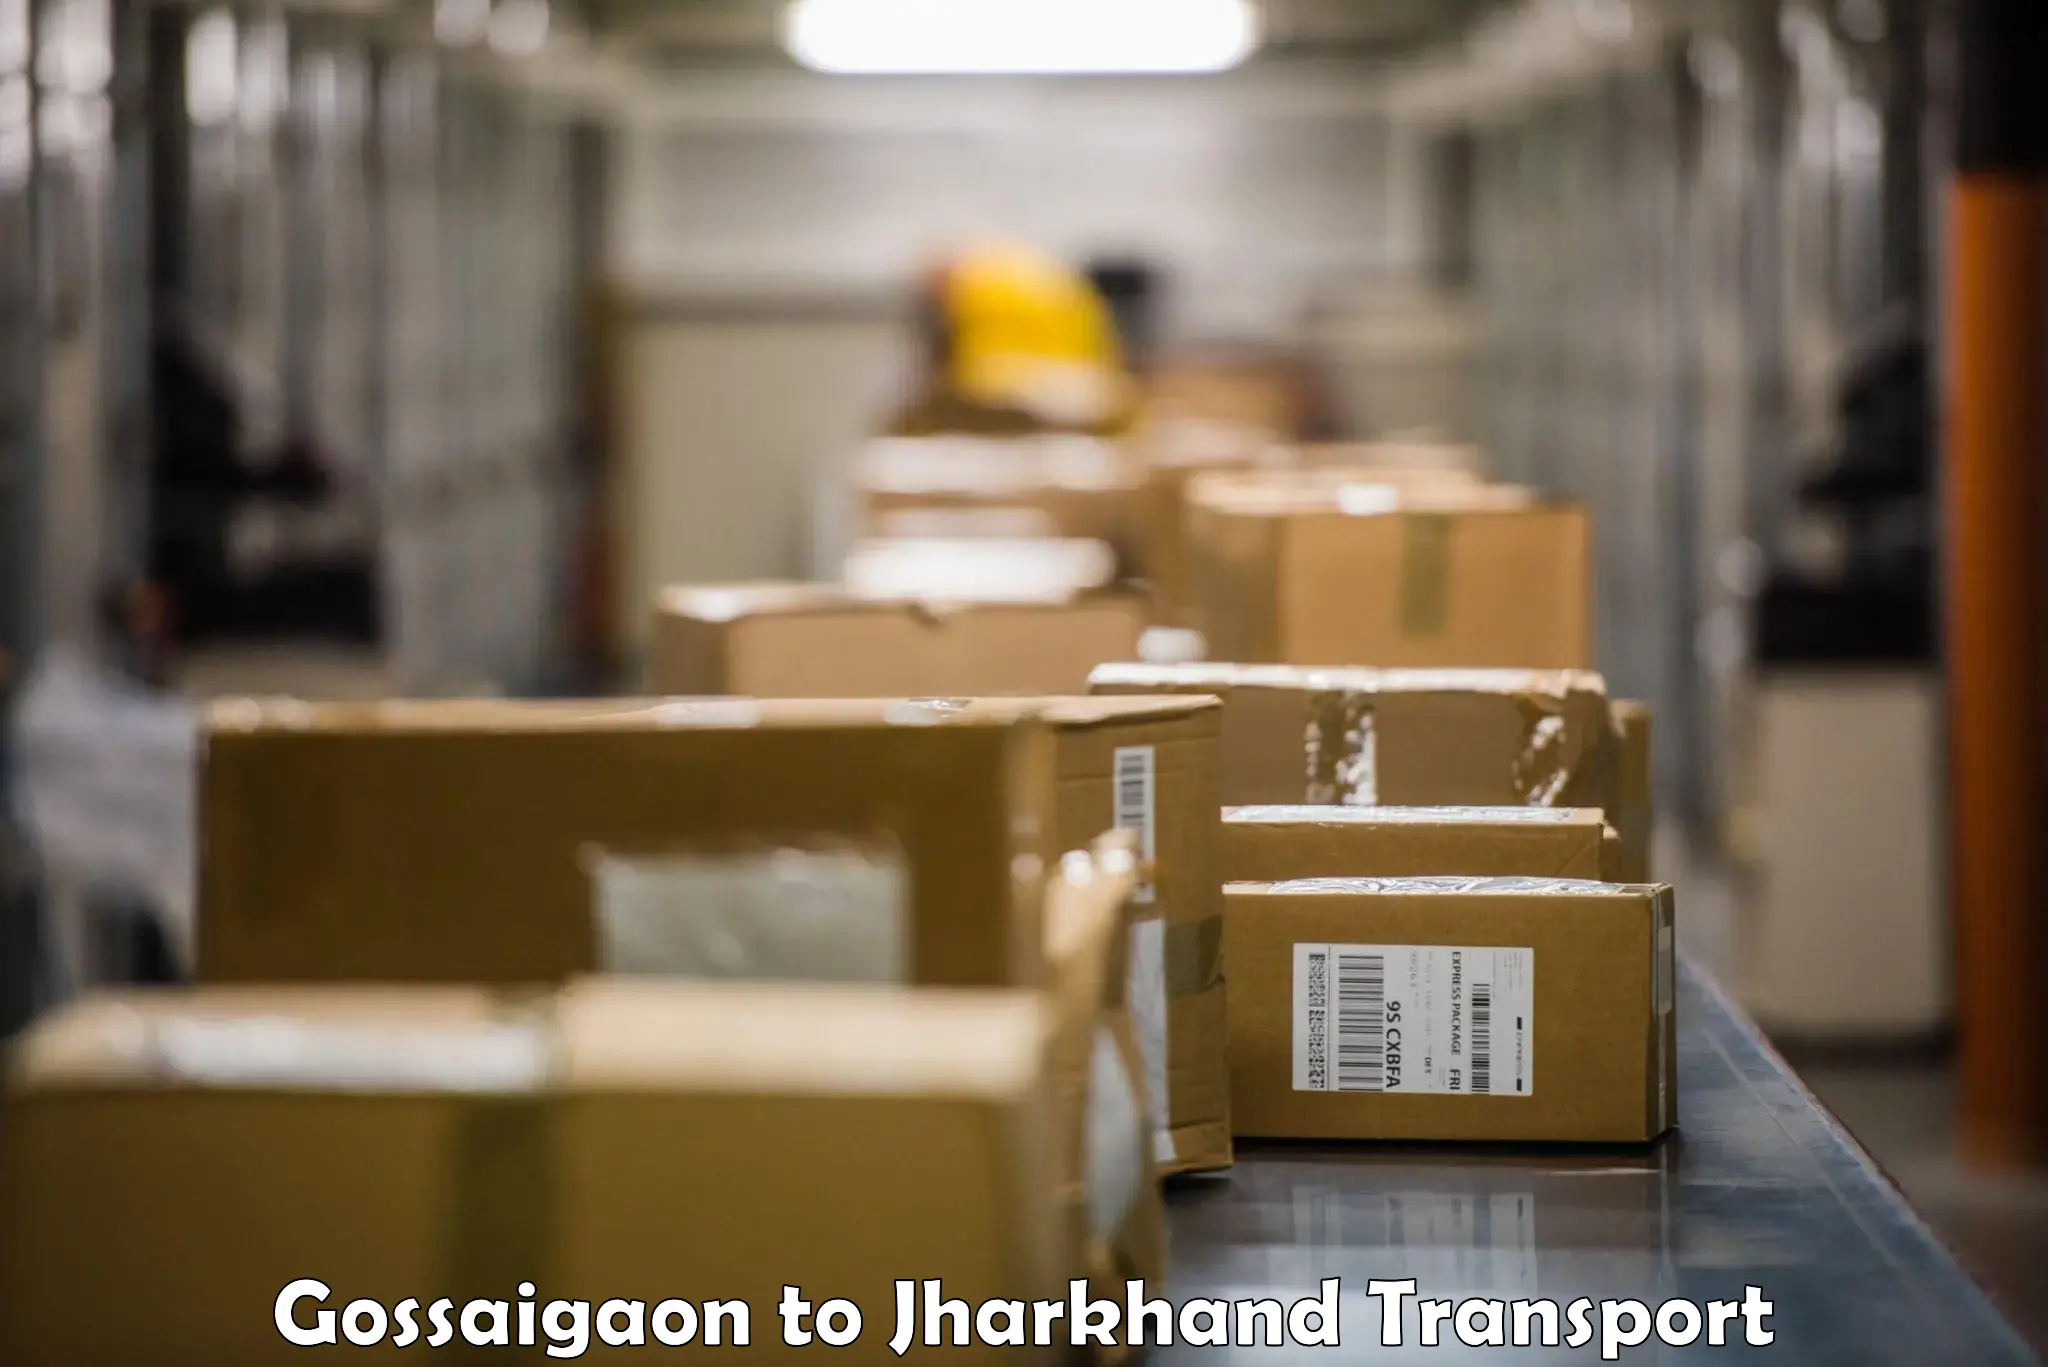 Best transport services in India Gossaigaon to Nagar Untari